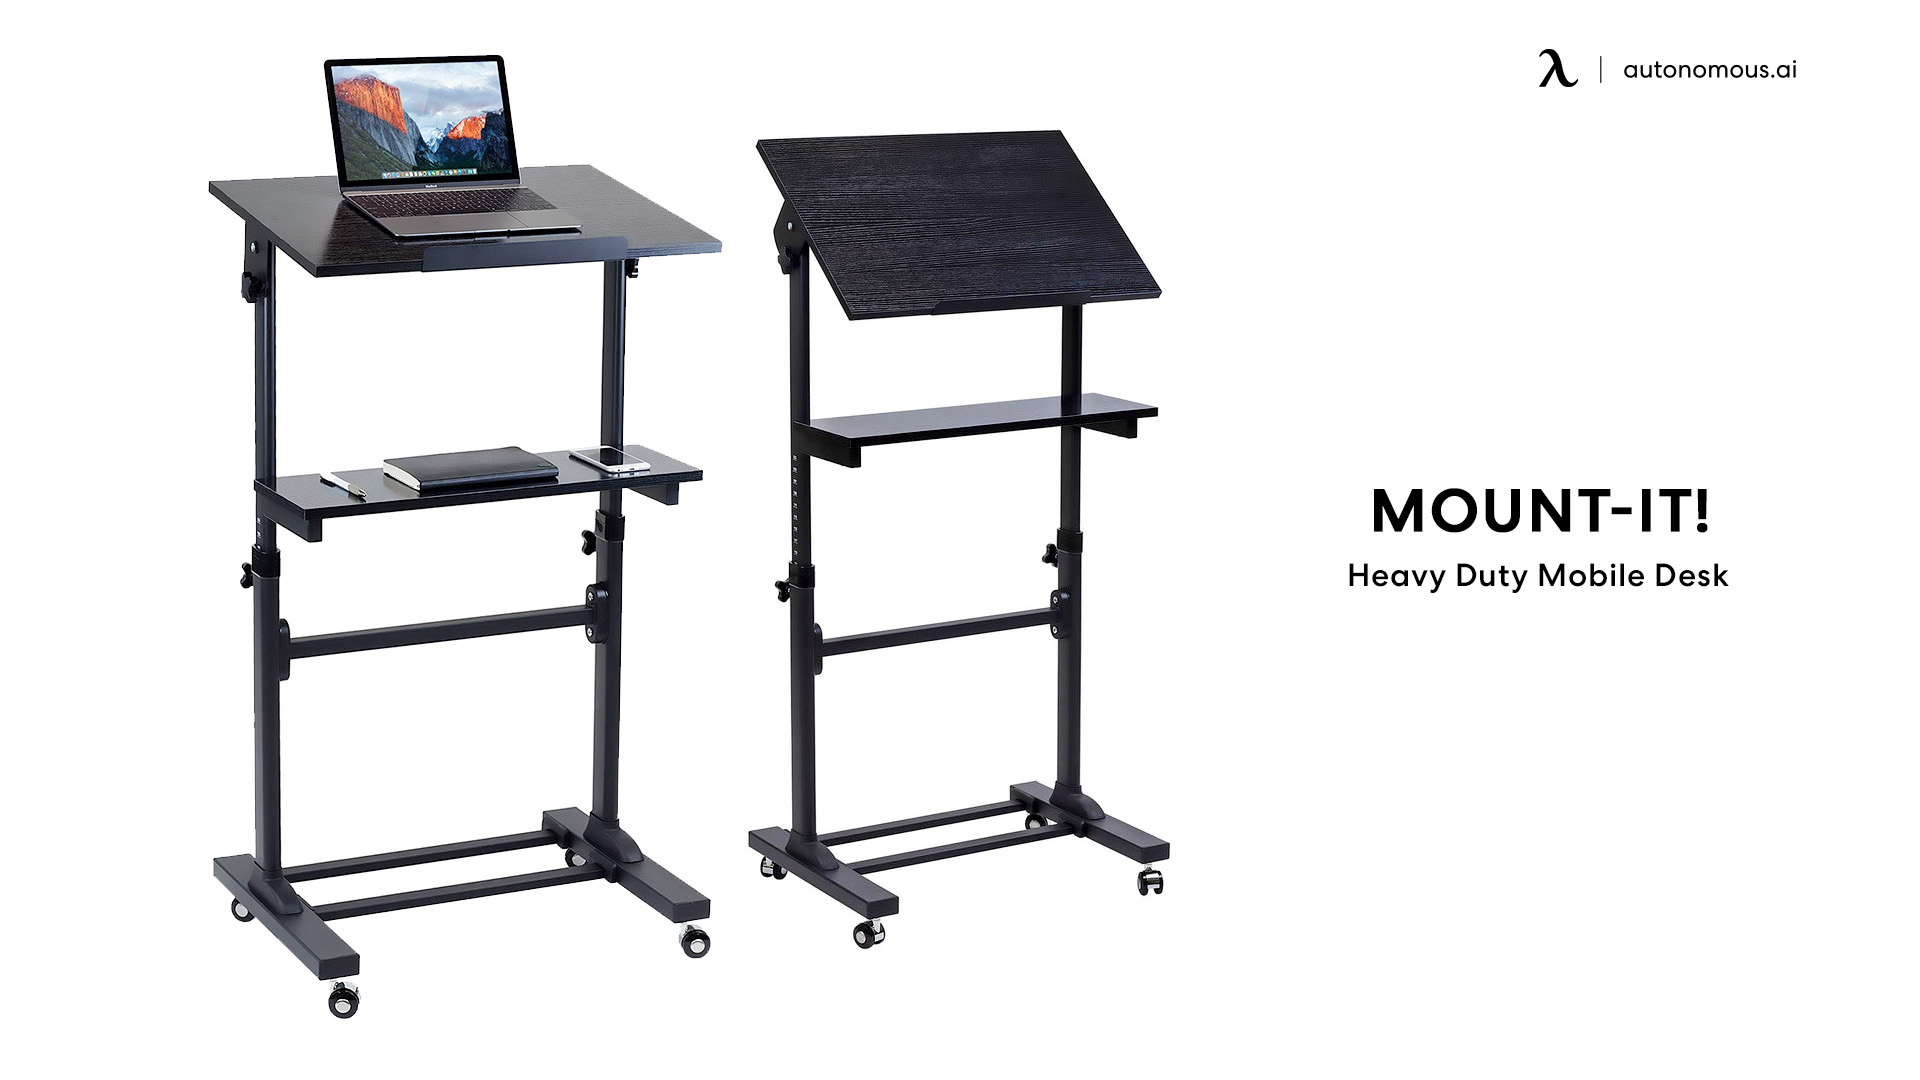 Mount-It! Heavy Duty Mobile Desk